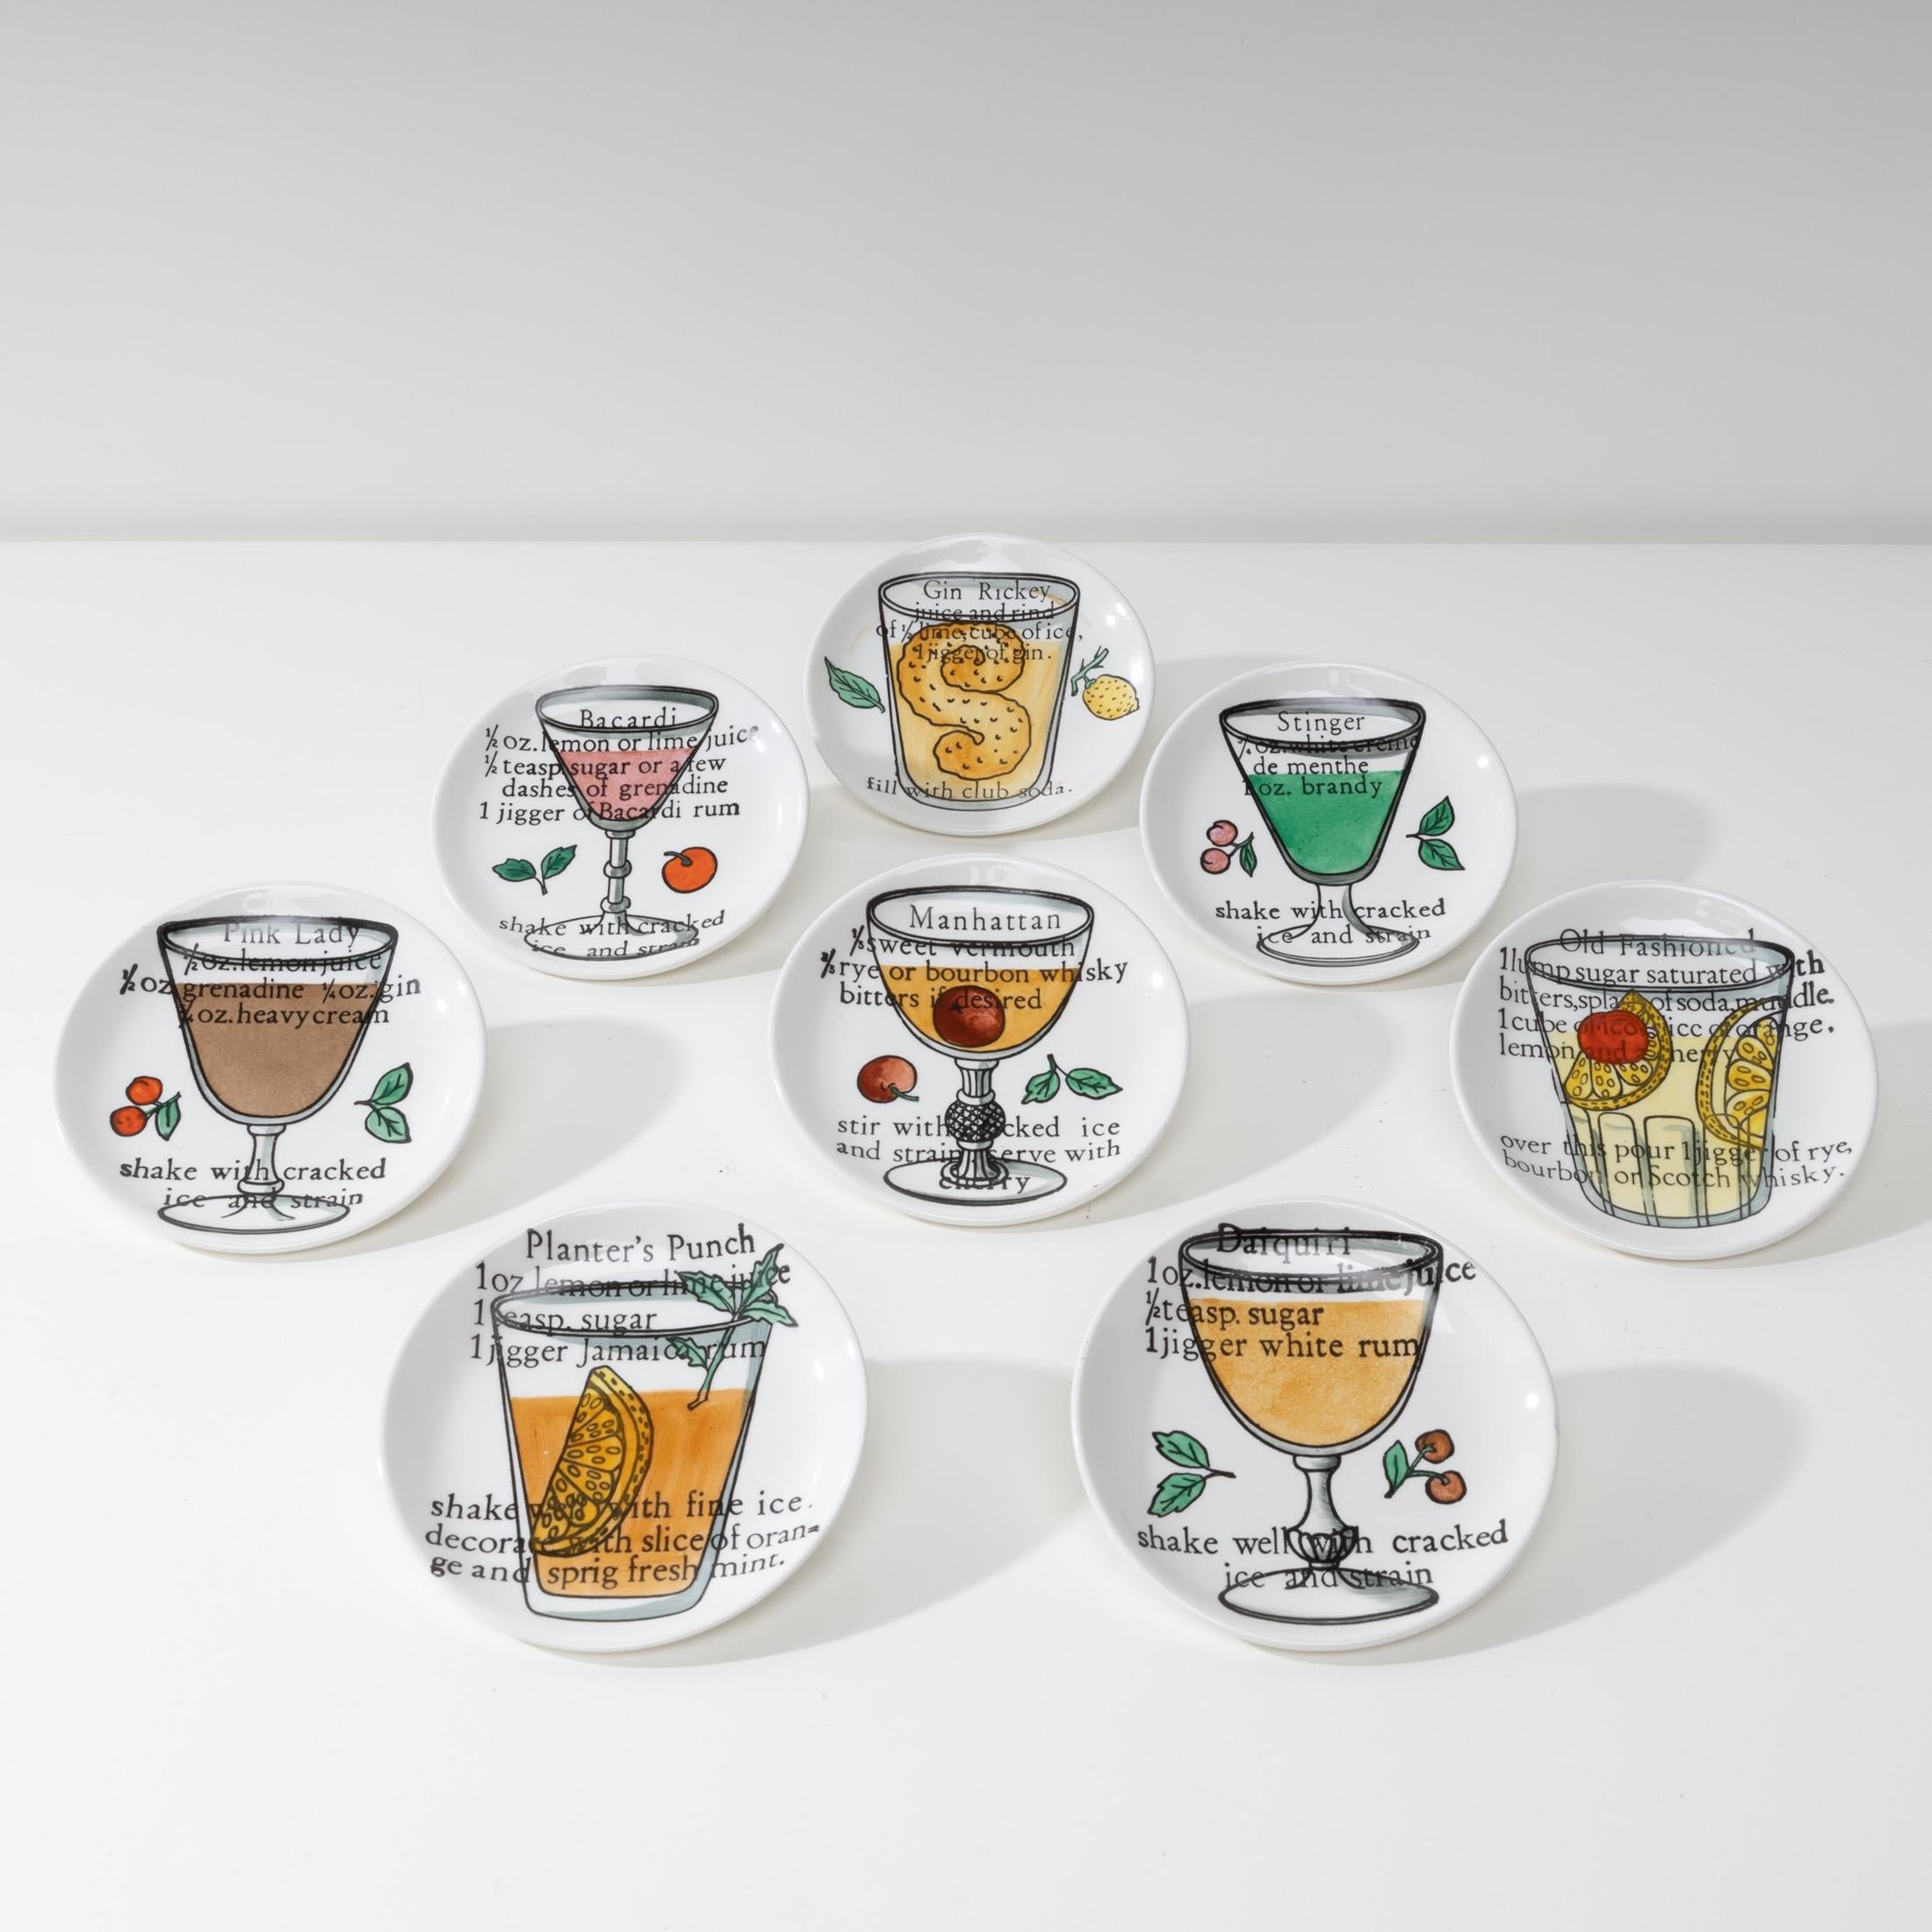 À propos de cet ensemble de 8 tasses ou sous-verres « Cocktails » de Piero Fornasetti
Porcelaine à décor polychrome.
Chaque sous-assiette illustre un cocktail et sa recette.
Chaque couvercle comporte sur la face inférieure la mention «